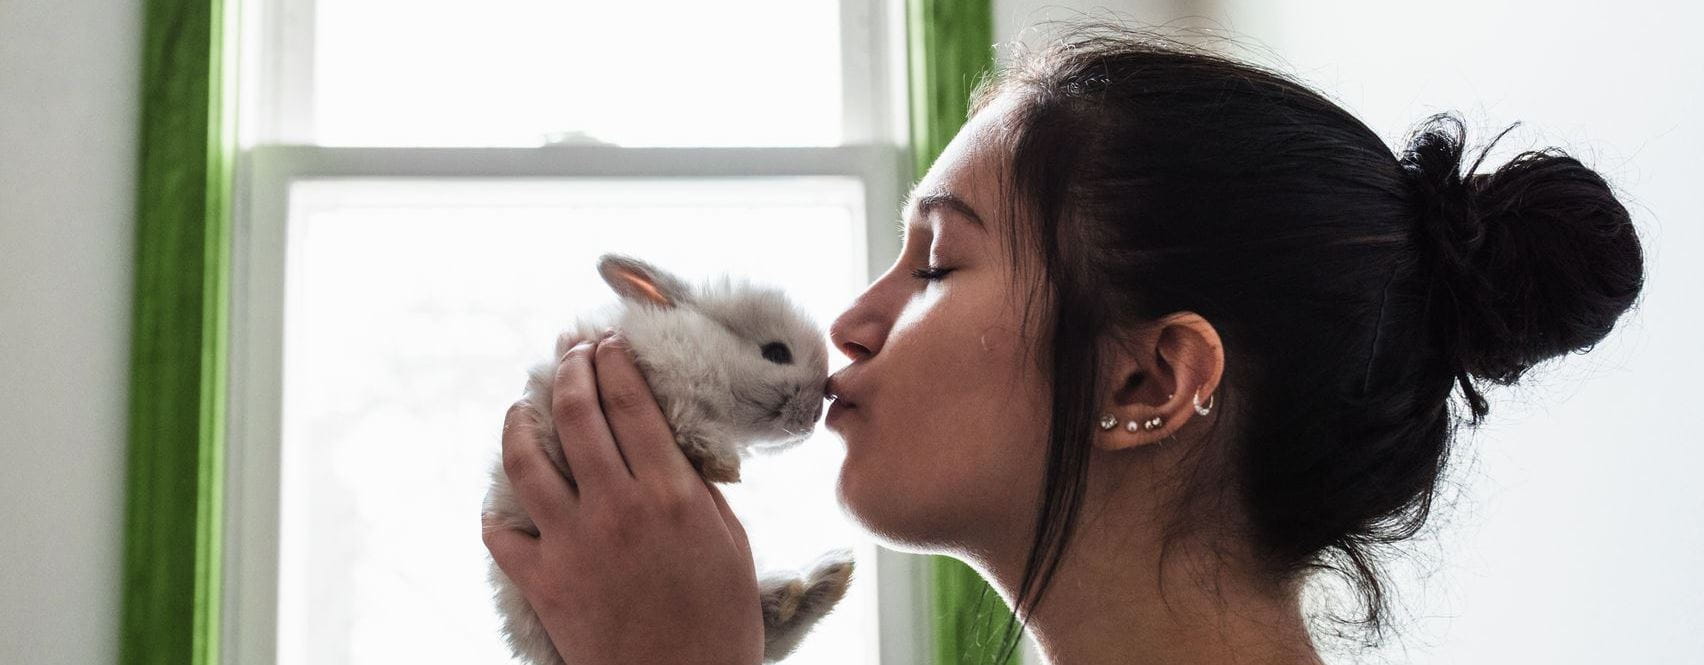 Donna che bacia coniglio